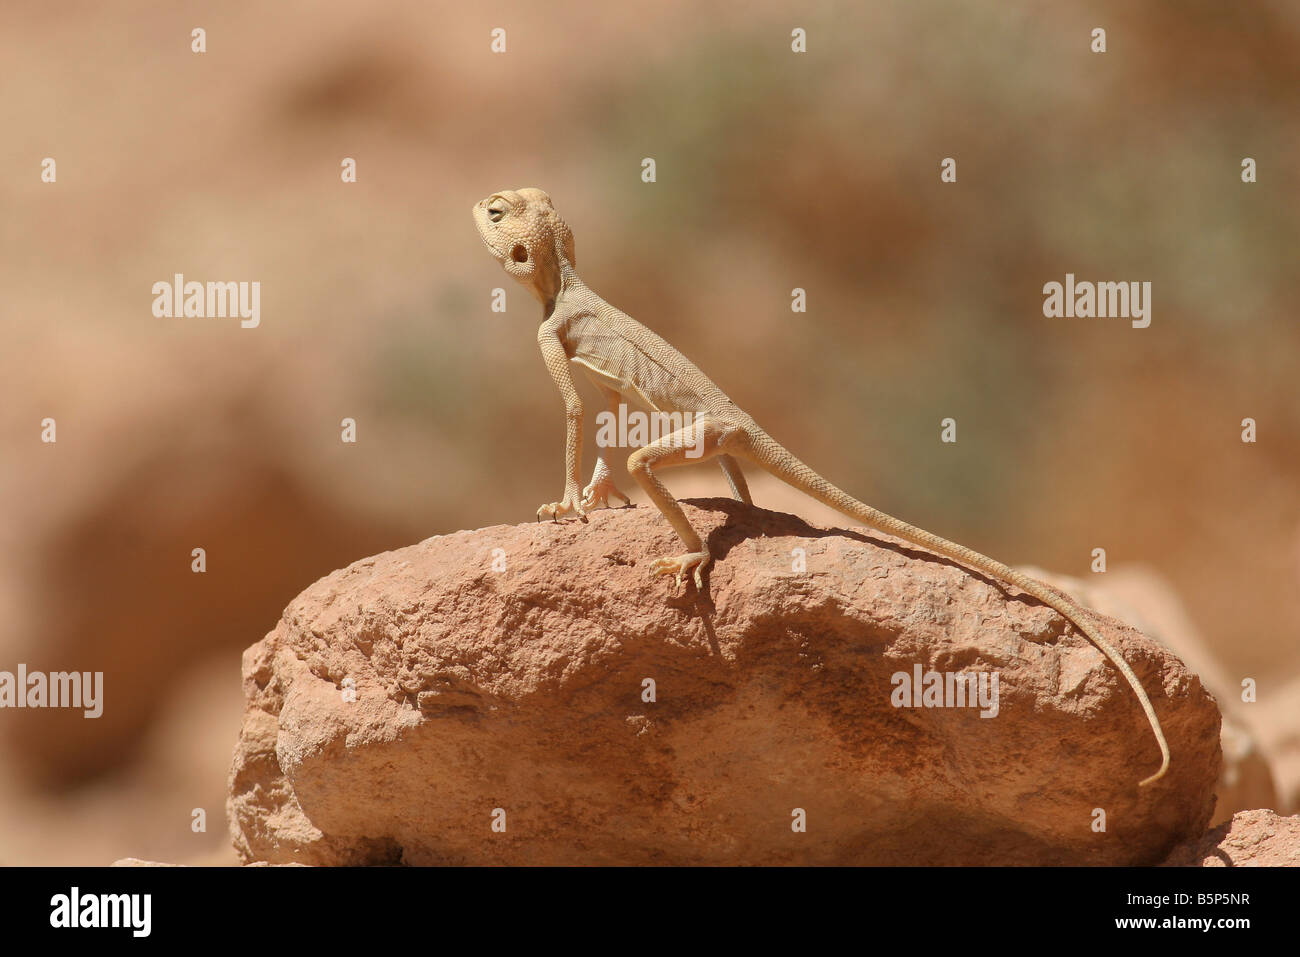 Israele Agama sinaita Sinai Agama crogiolarvi al sole su una roccia Foto Stock